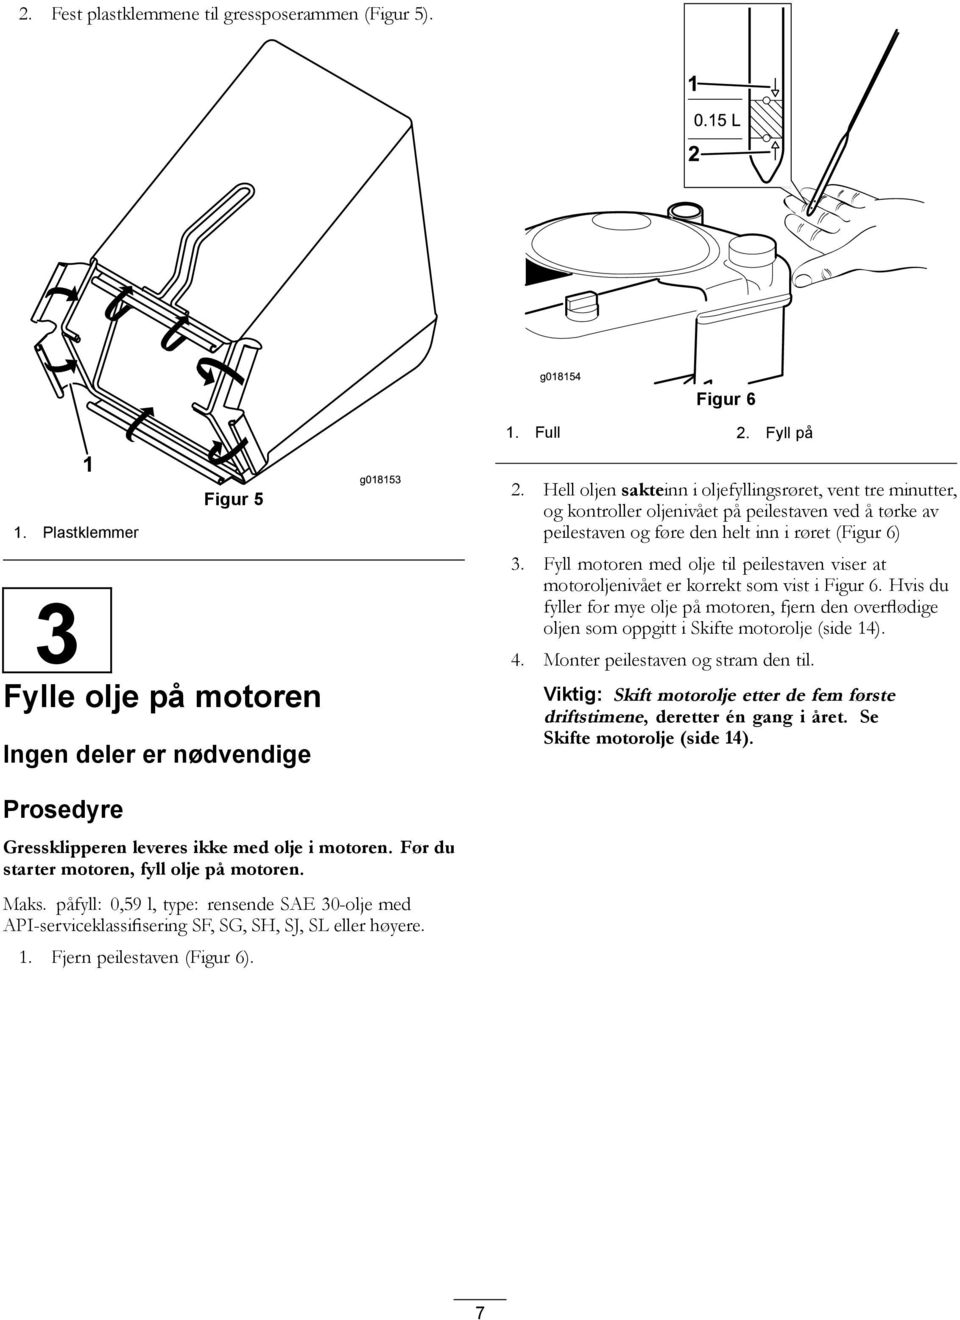 Fyll motoren med olje til peilestaven viser at motoroljenivået er korrekt som vist i Figur 6.